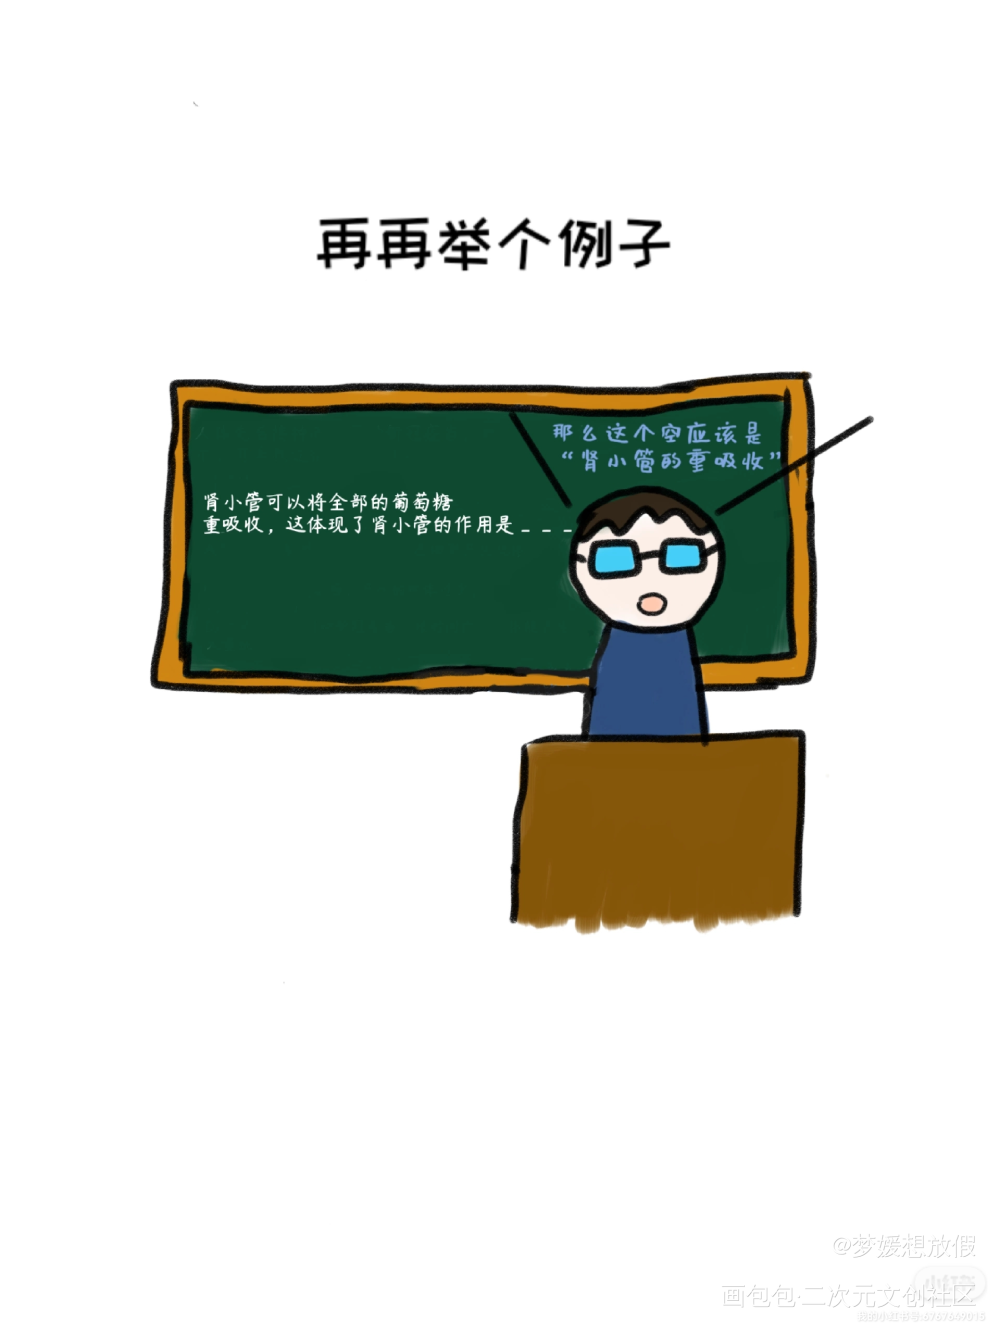 【生物课】生物老师和我_彩色漫画绘画作品